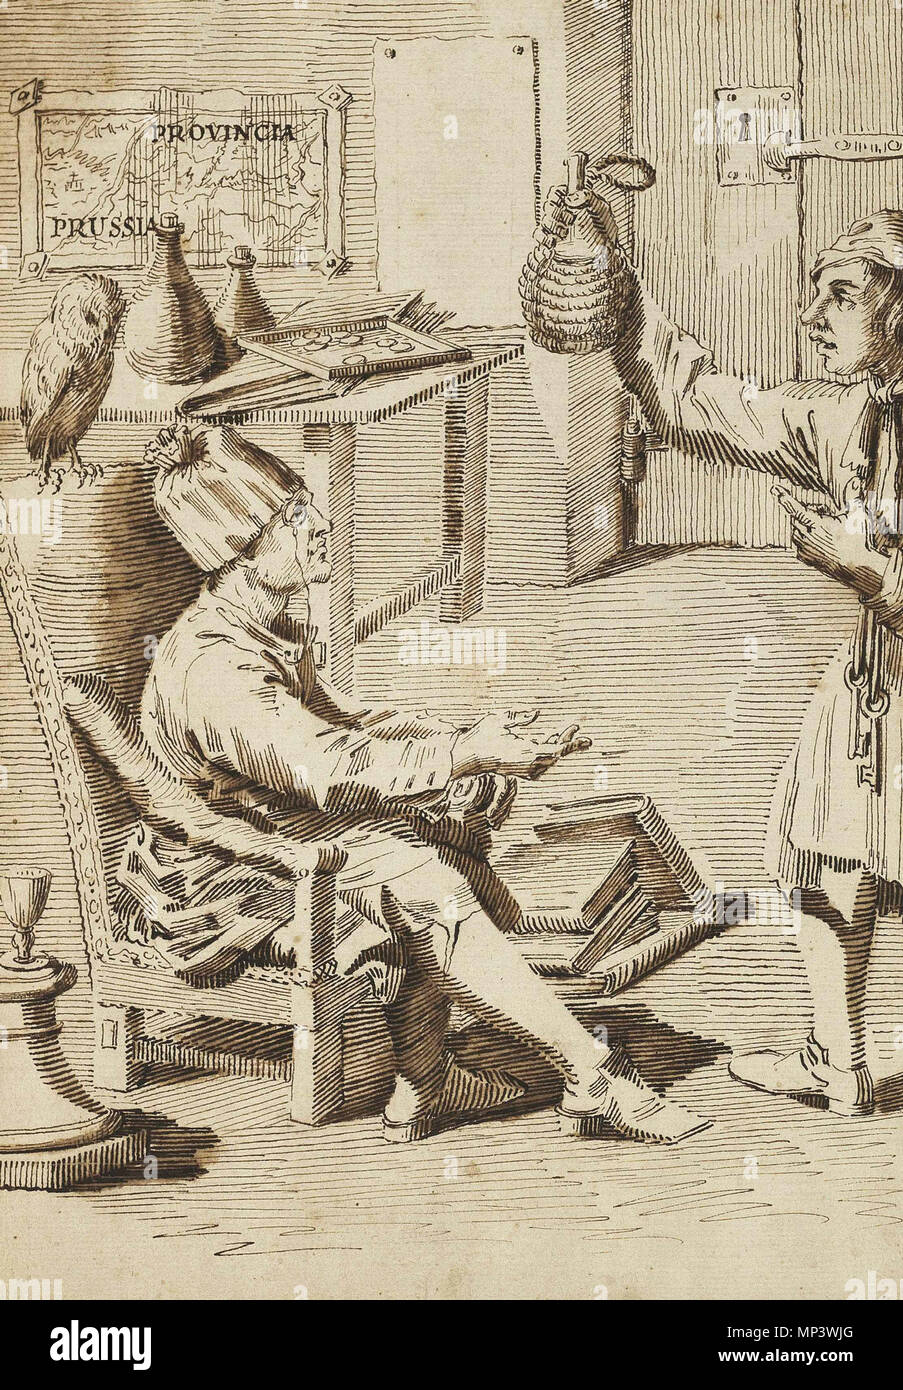 Philipp von Stosch (1691-1757) dans son étude avec un serviteur tenant une fiole *traces de craie noire, plume et encre brune, lavis *30,6 x 21,4 cm *inscrit : PROVINCIA la Prusse (sur la carte) . Anglais : Philipp von Stosch (1691-1757) dans son étude avec un serviteur tenant une fiole de traces de craie noire, plume et encre brune, lavis 30,6 x 21,4 cm inscrit : PROVINCIA la Prusse (sur la carte) . 18e siècle. Pier Leone Ghezzi (1674-1755), peintre et caricaturiste Description Date de naissance/Décès 28 Juin 1674 6 mars 1755 Lieu de naissance/décès Rome Rome lieu de travail Florence (1711) ; Rome ( Banque D'Images